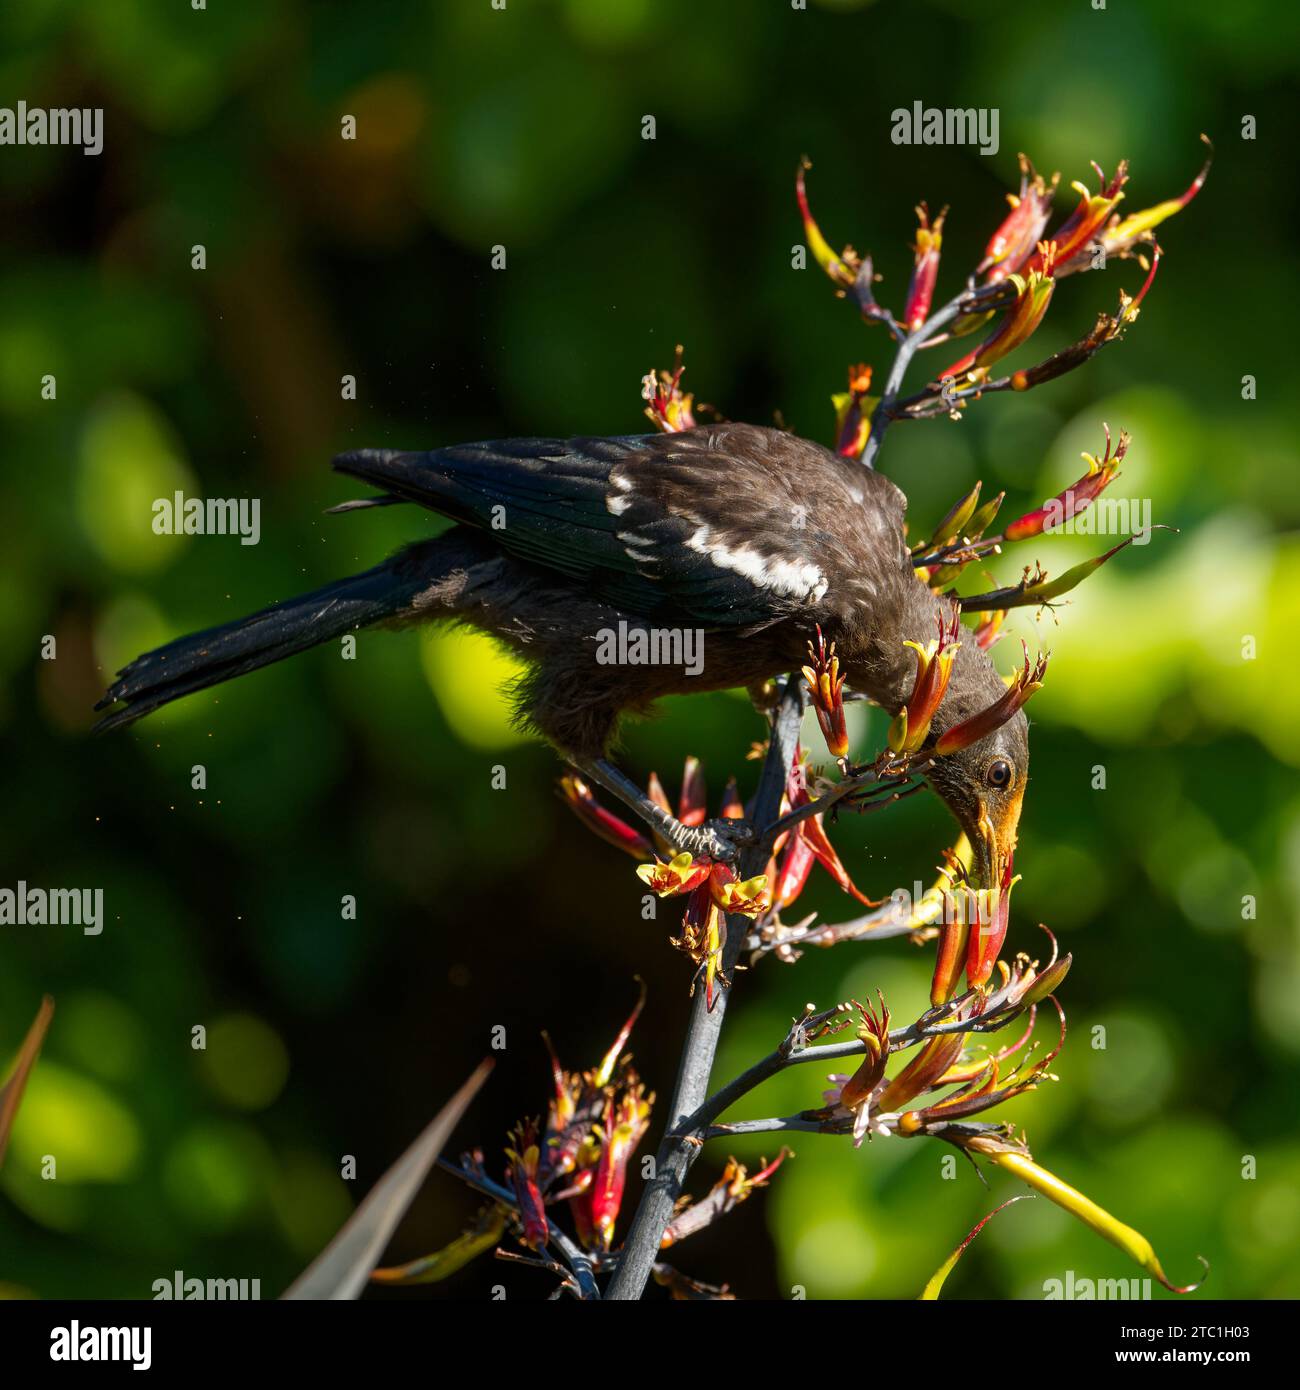 Un piccolo Tui (gape gialla), un uccello passerino endemico della nuova Zelanda, che si nutre di nettare di piante di lino. Il fiore fiorisce depositando il polline d'arancia sulla testa. Foto Stock